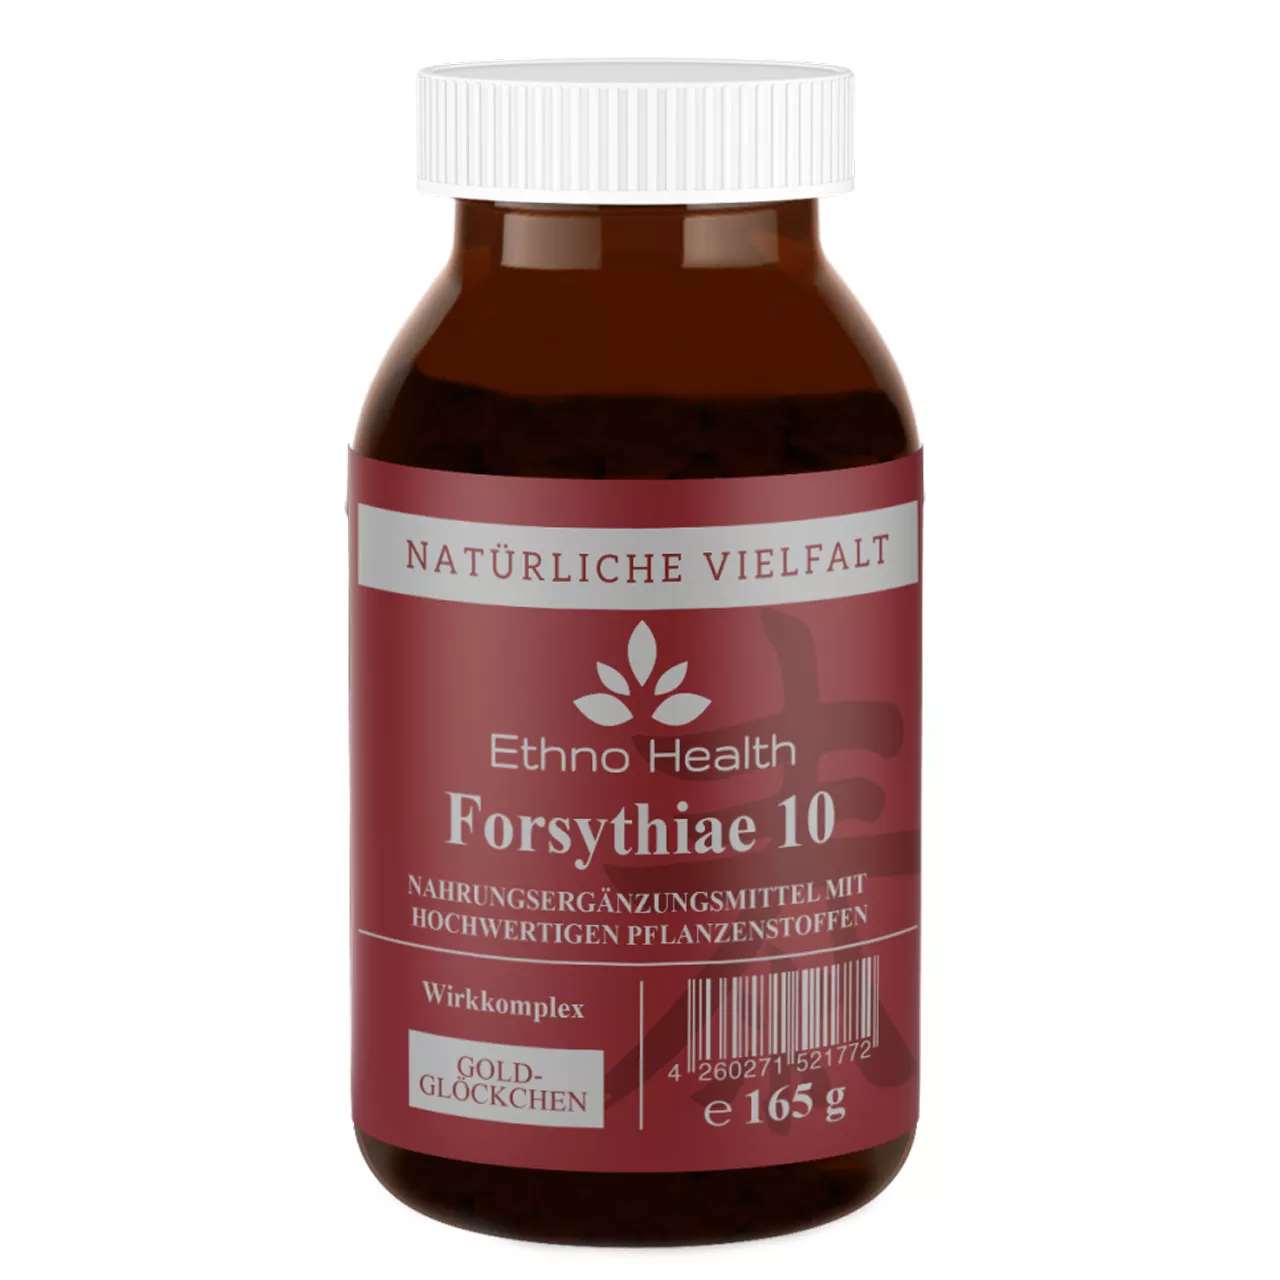 Forsythiae 10 Pulver von Ethno Health beinhaltet 165 Gramm